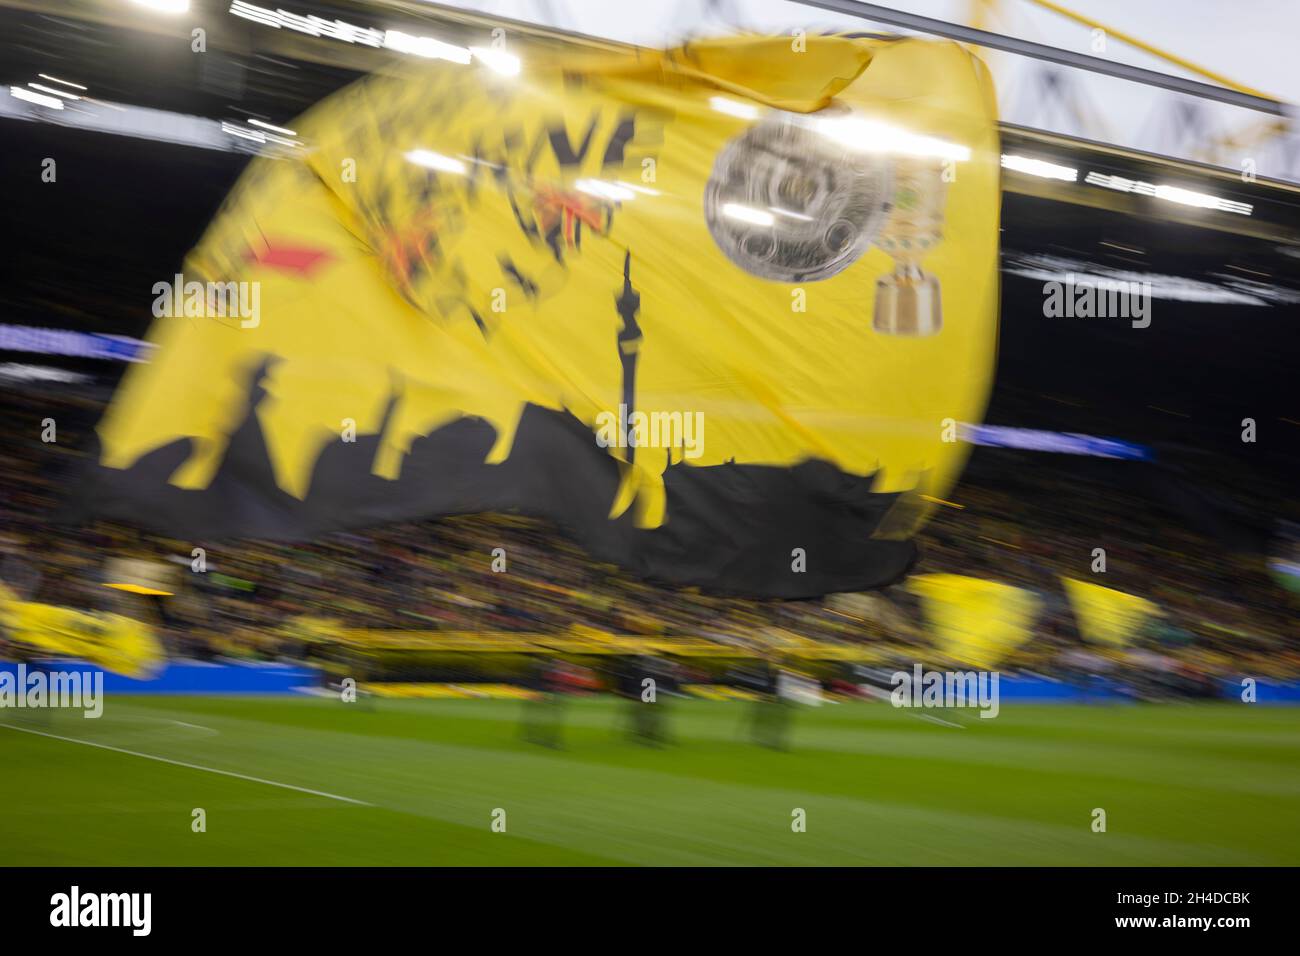 Dortmund, Signal Iduna, 30.10.21: BVB Fahnen werden geschwungen vor dem Spiel der 1.Bundesliga 1.FC Köln vs. Borussia Dortmund. Foto: Pressefoto Mika Foto de stock